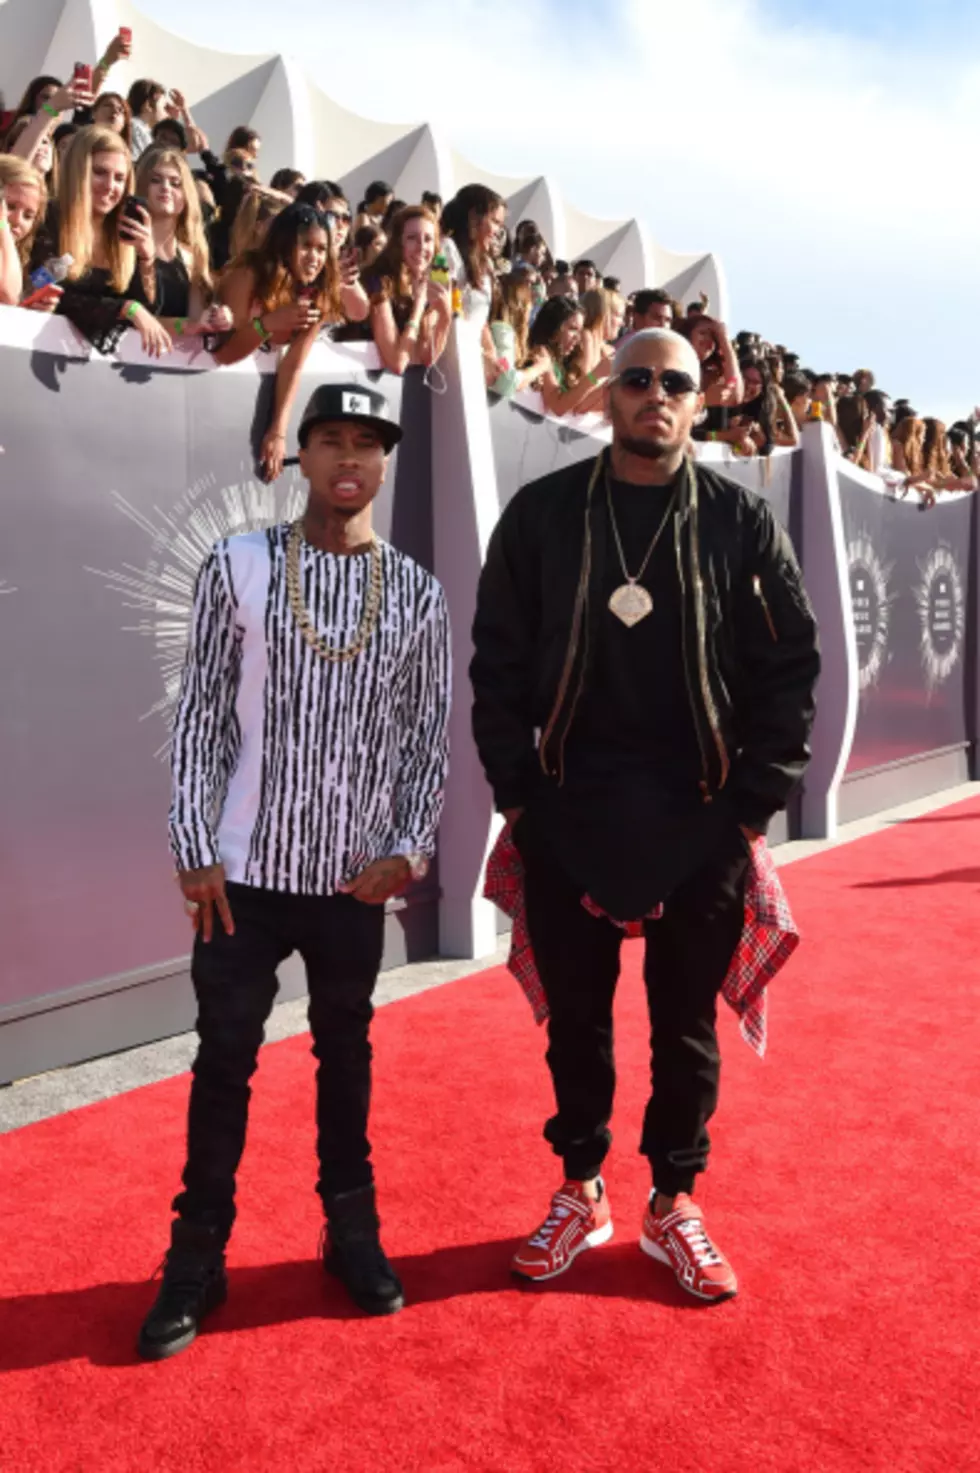 Chris Brown & Tyga "Ayo" Video